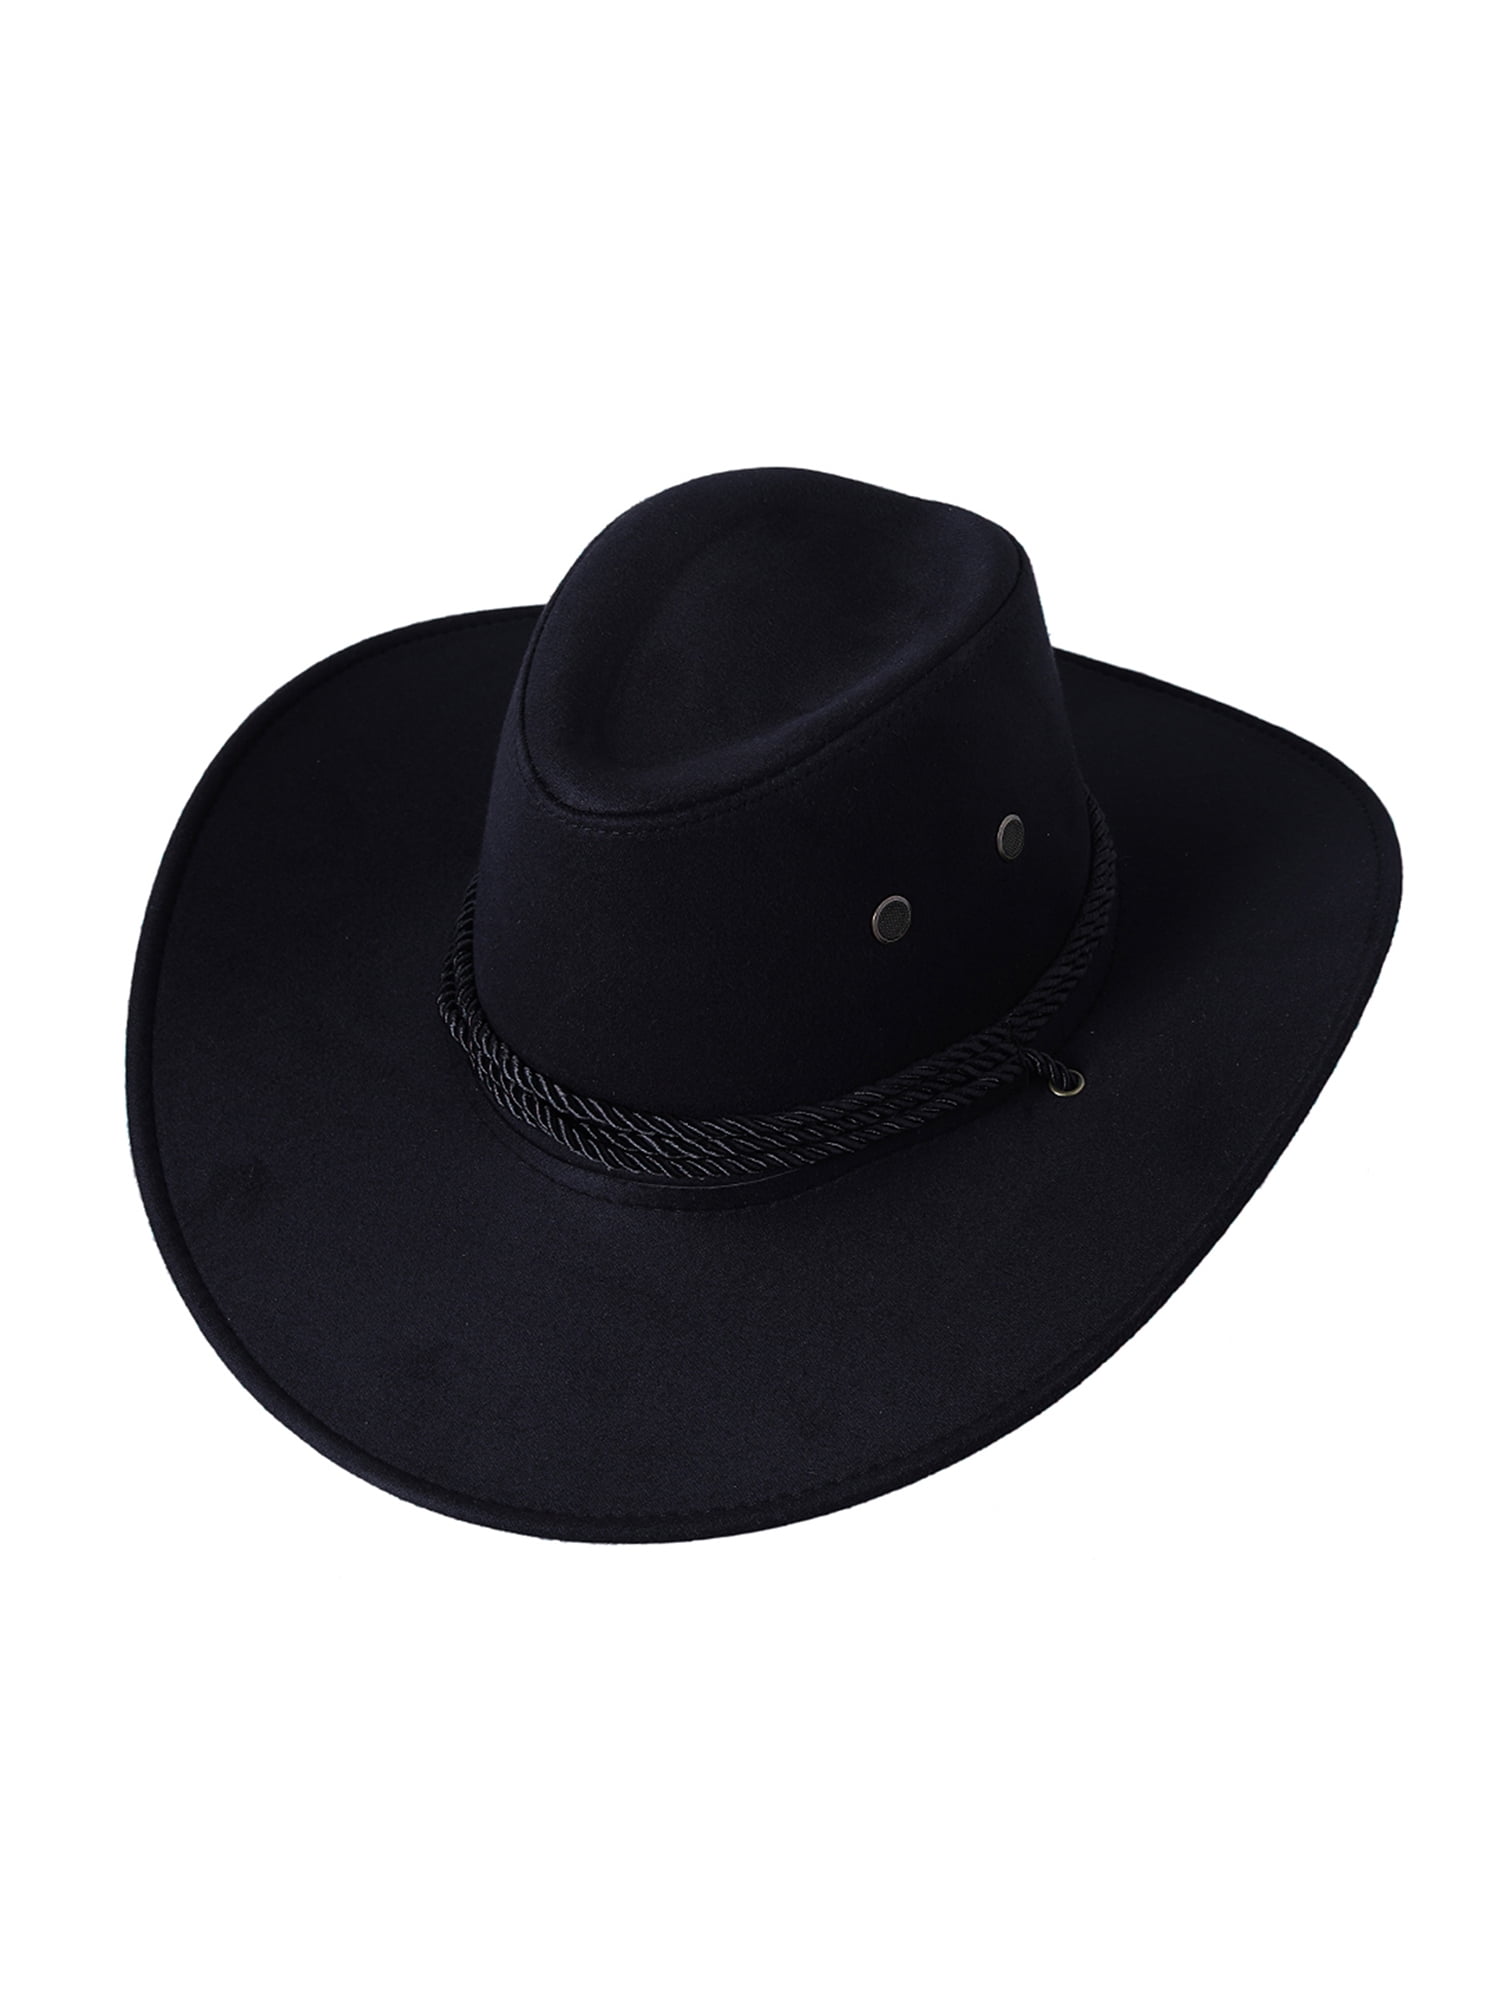 Classic Felt Wide Brim Western Cowboy Hat for Women Men Cowgirl